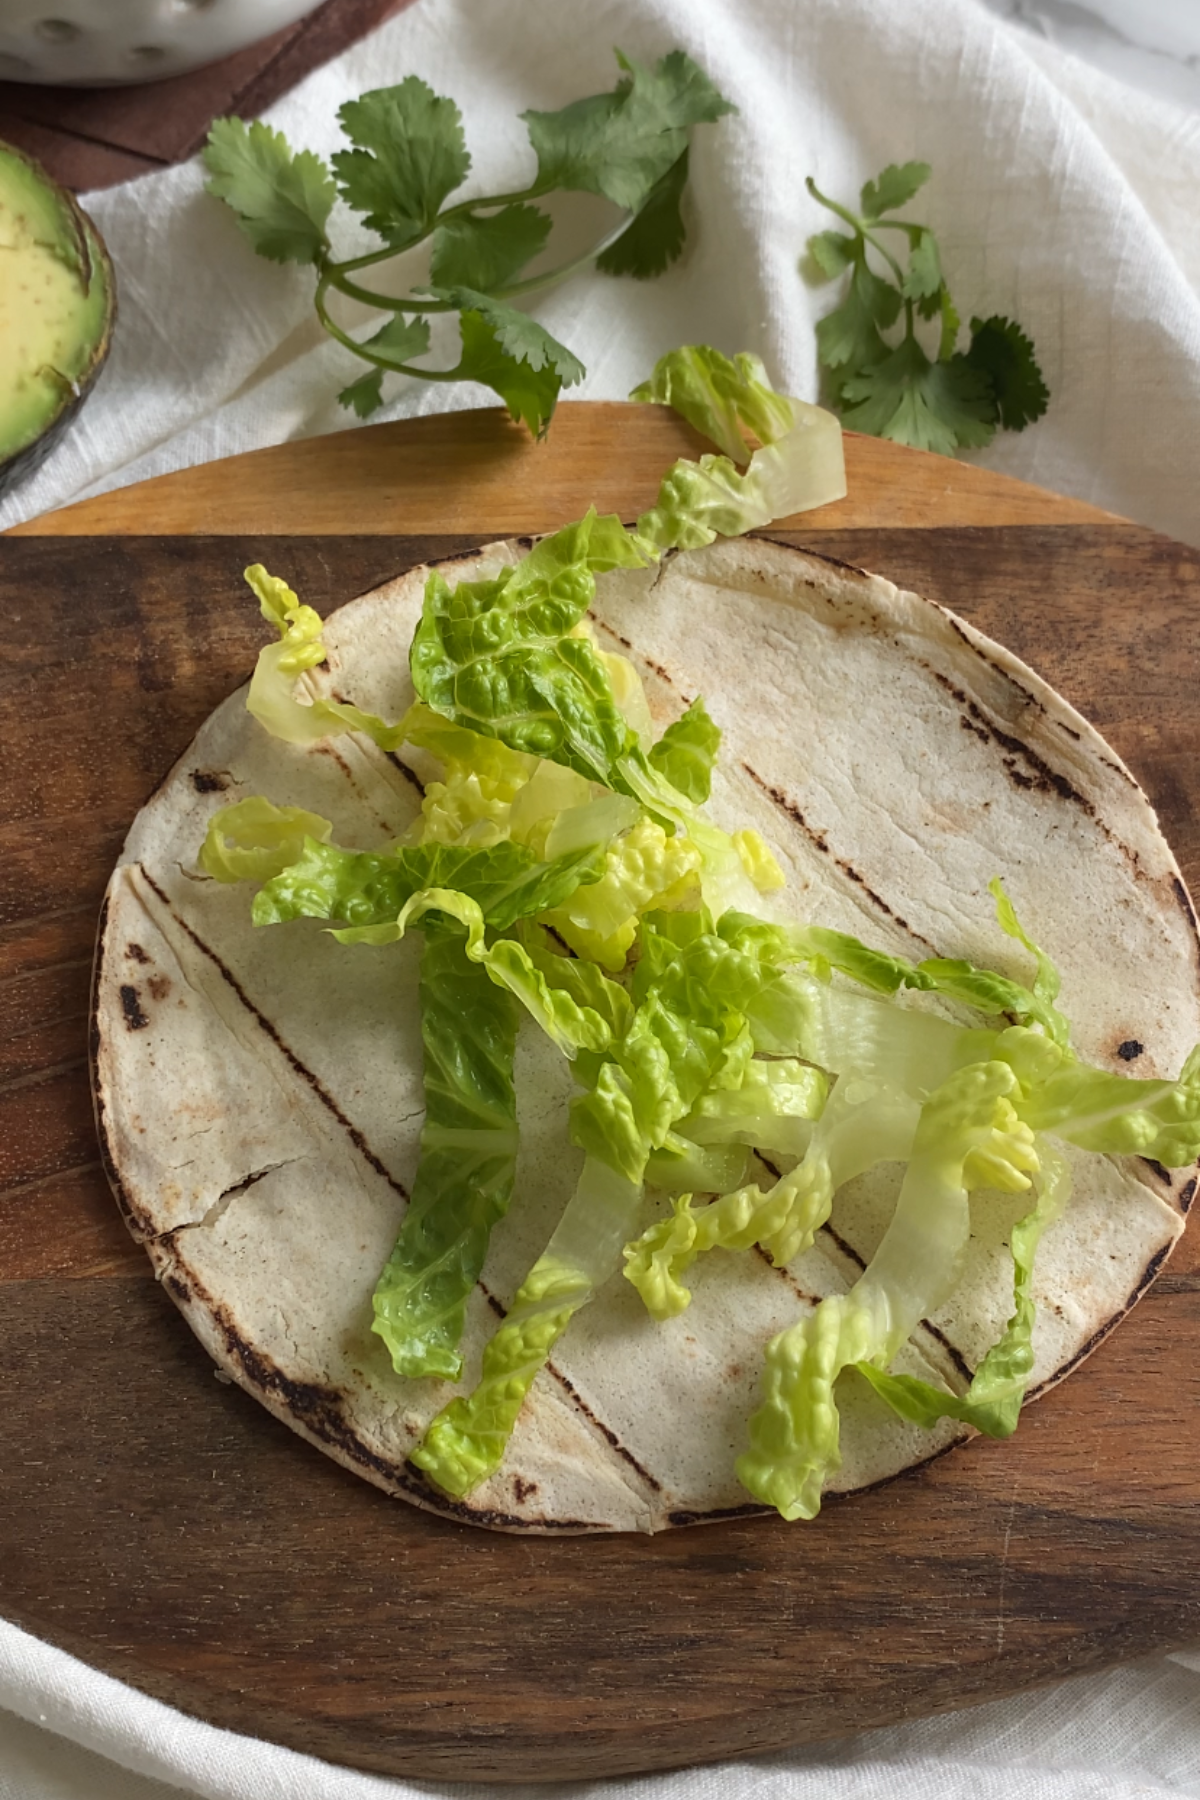 Shredded lettuce on a corn tortilla.